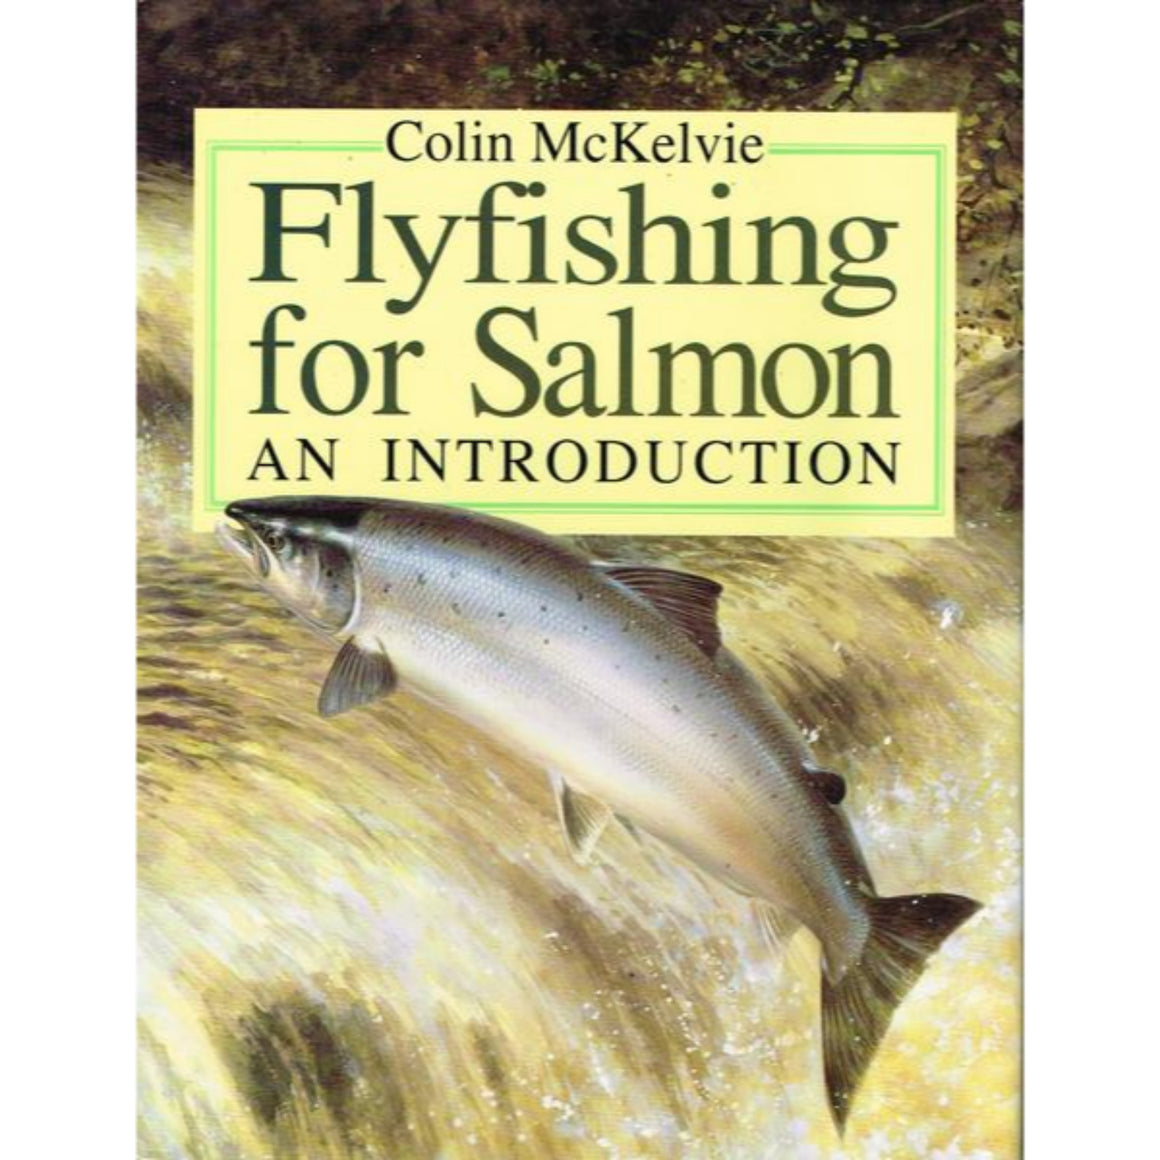 Flyfishing for Salmon